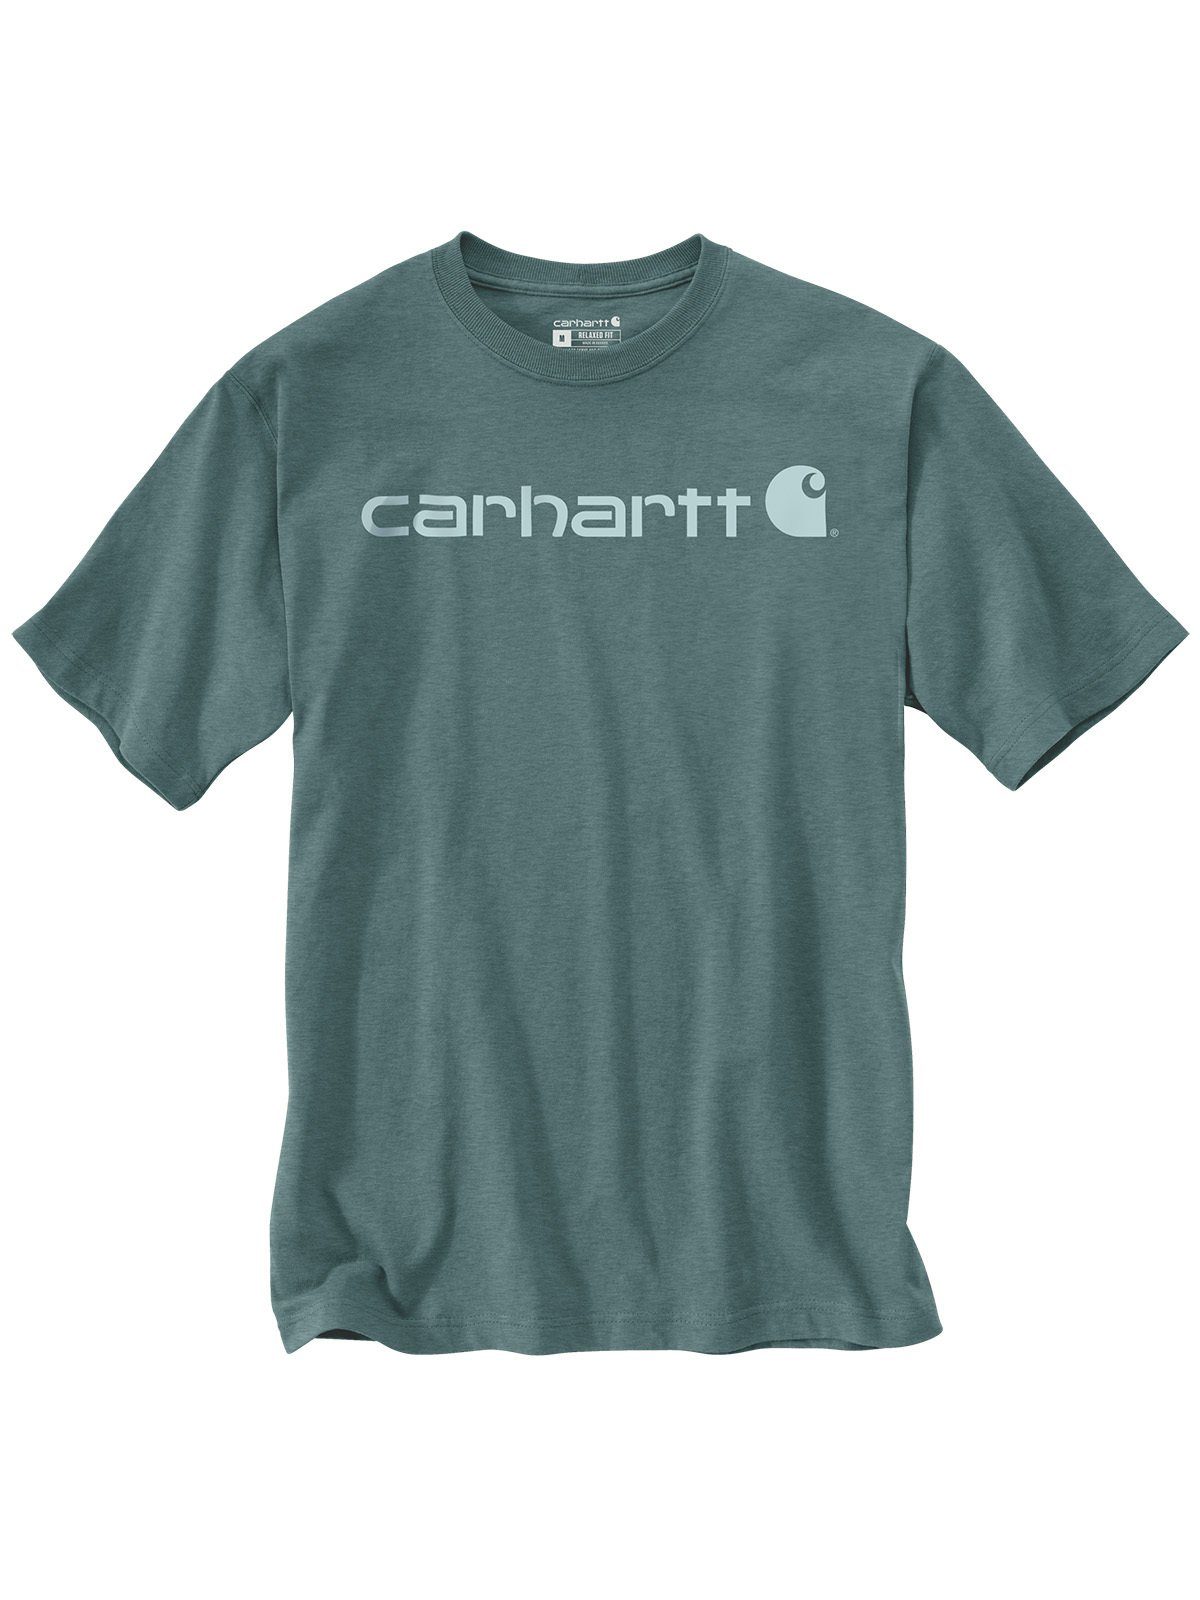 Carhartt T-Shirt 103361-GE1 Carhartt Logo